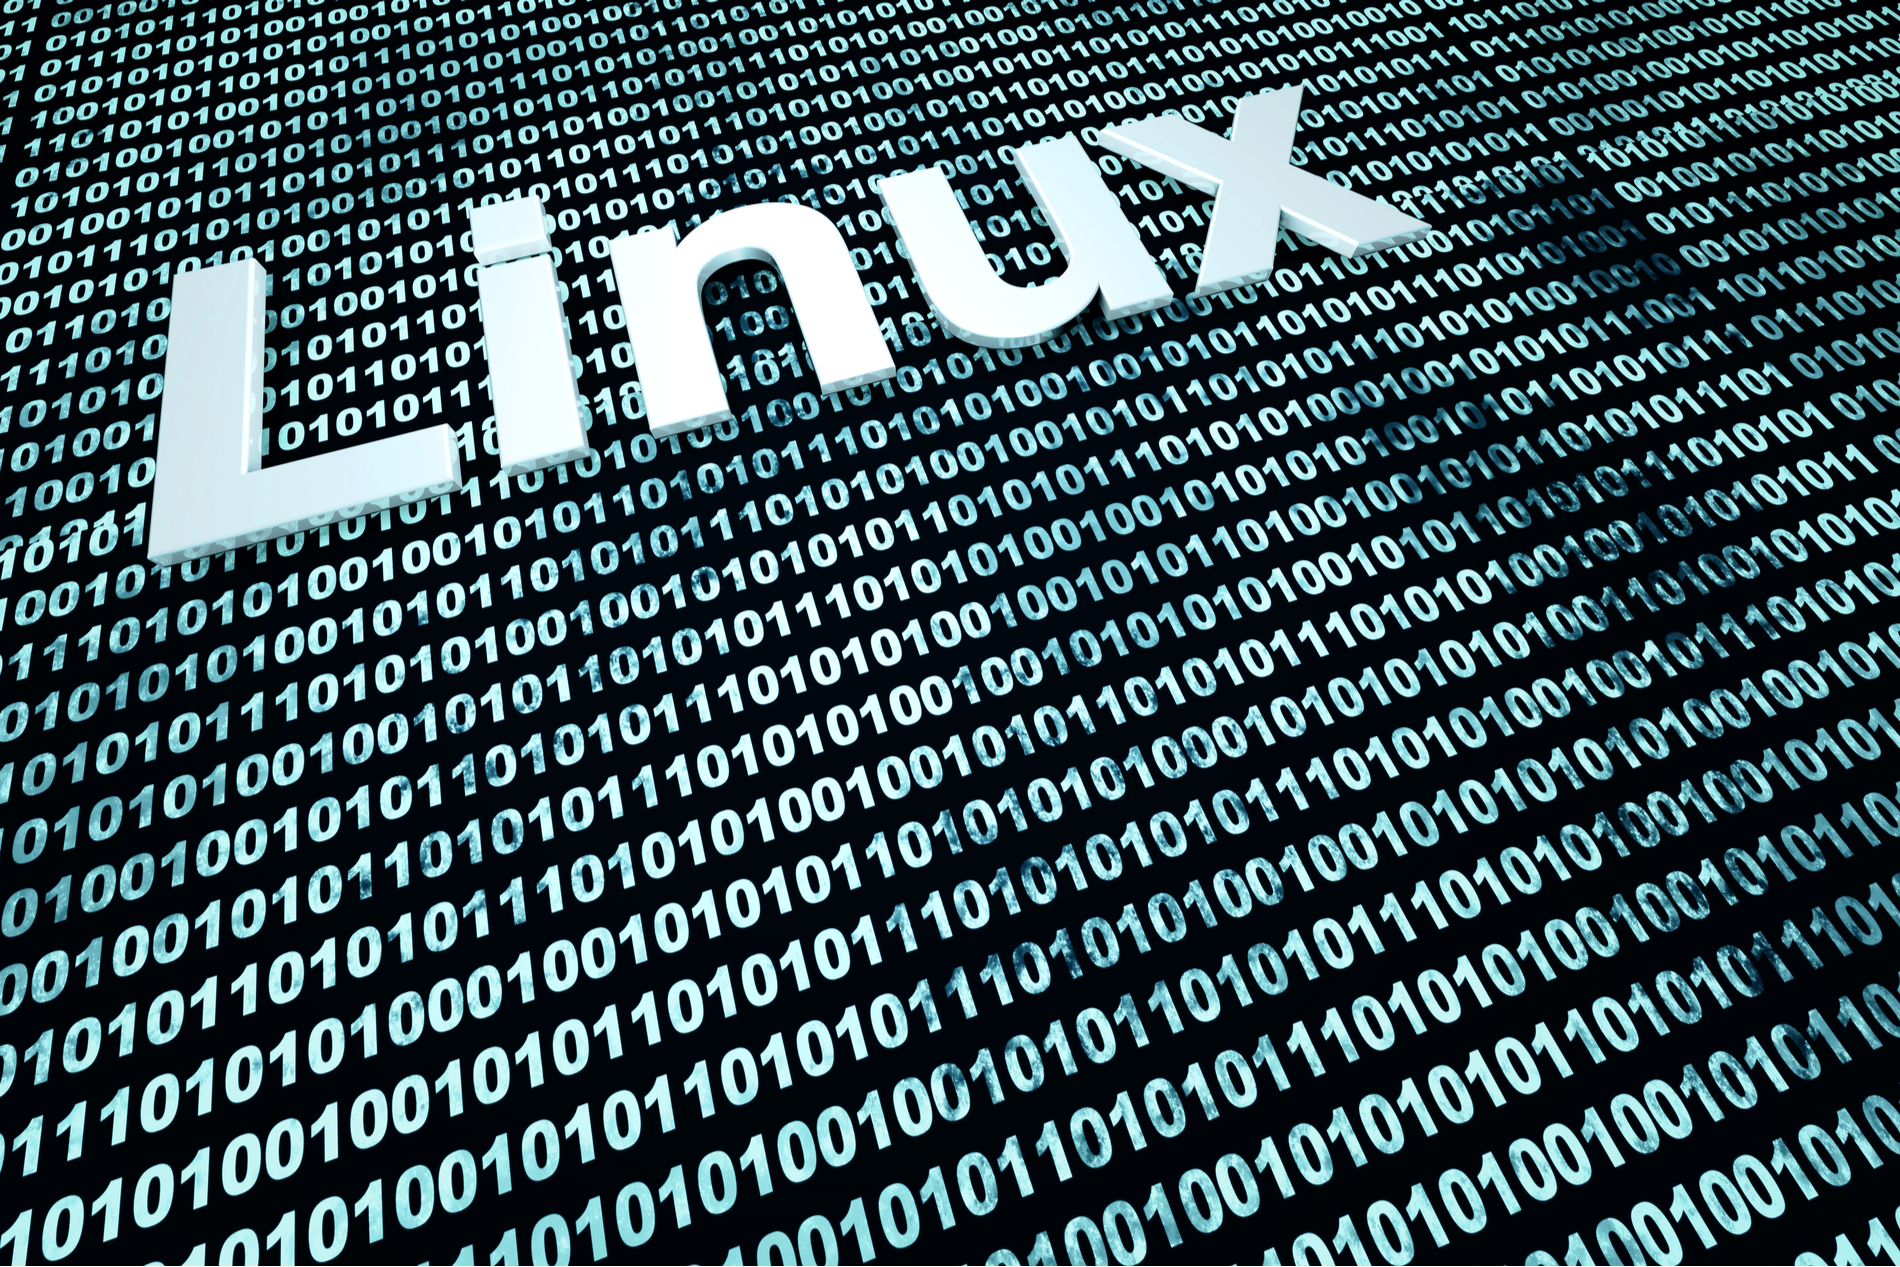 L'Université du Minnesota est interdite de contribuer au noyau Linux... Que s'est-il donc passé ?